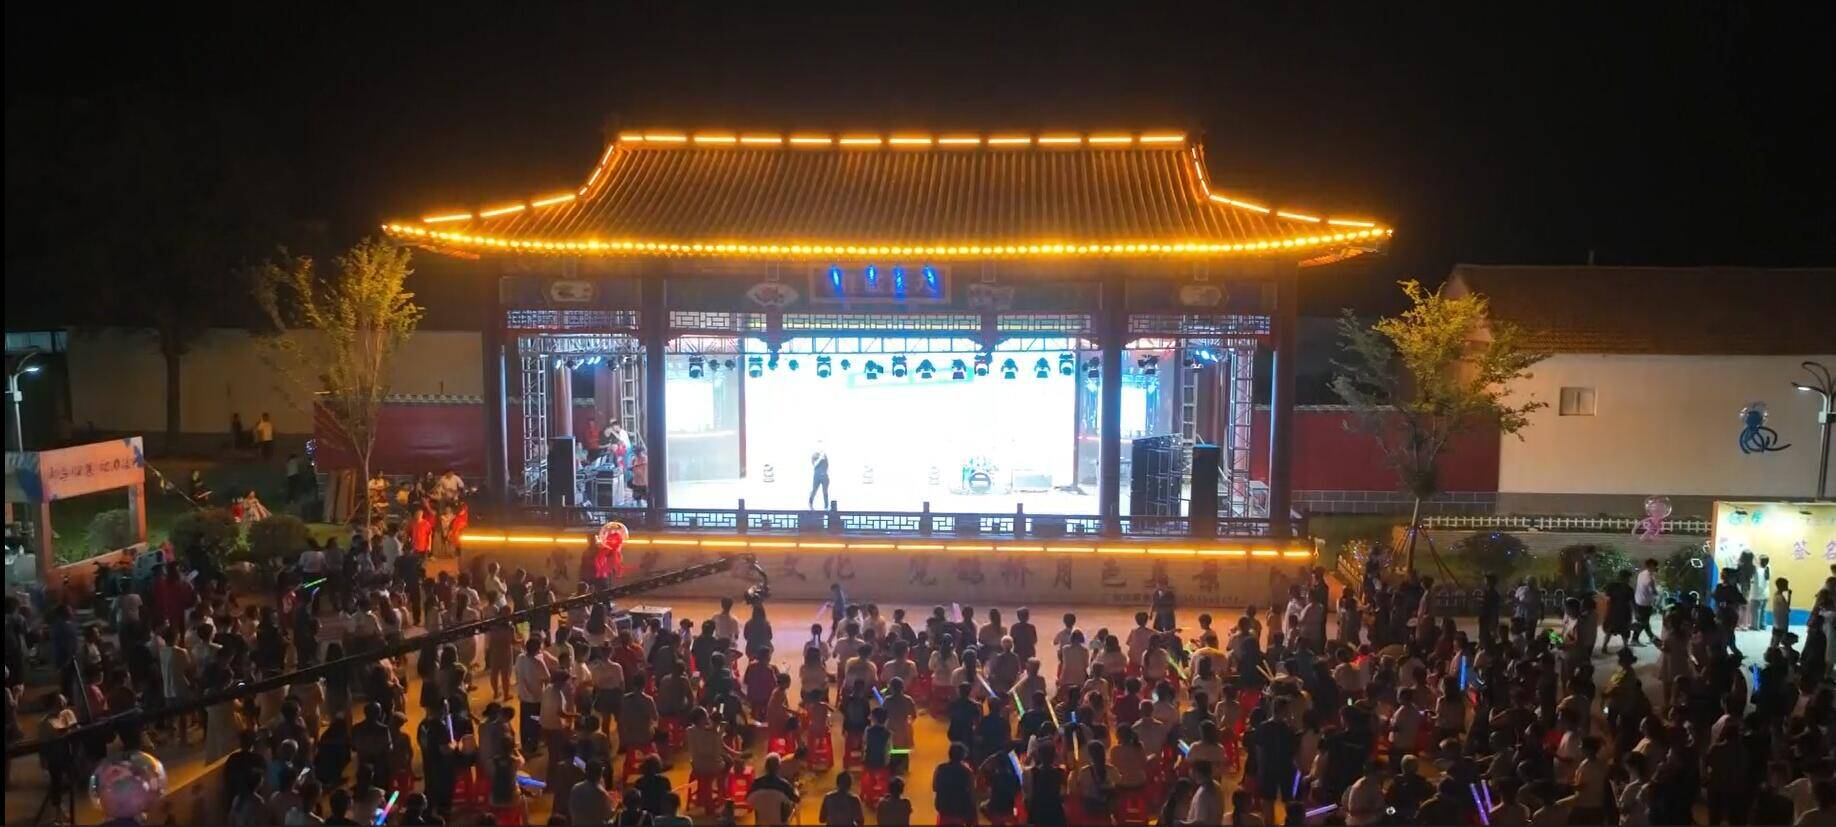 【夏日夜经济】滨州阳信：歌舞、美食、非遗 多彩晚会点燃乡村新活力